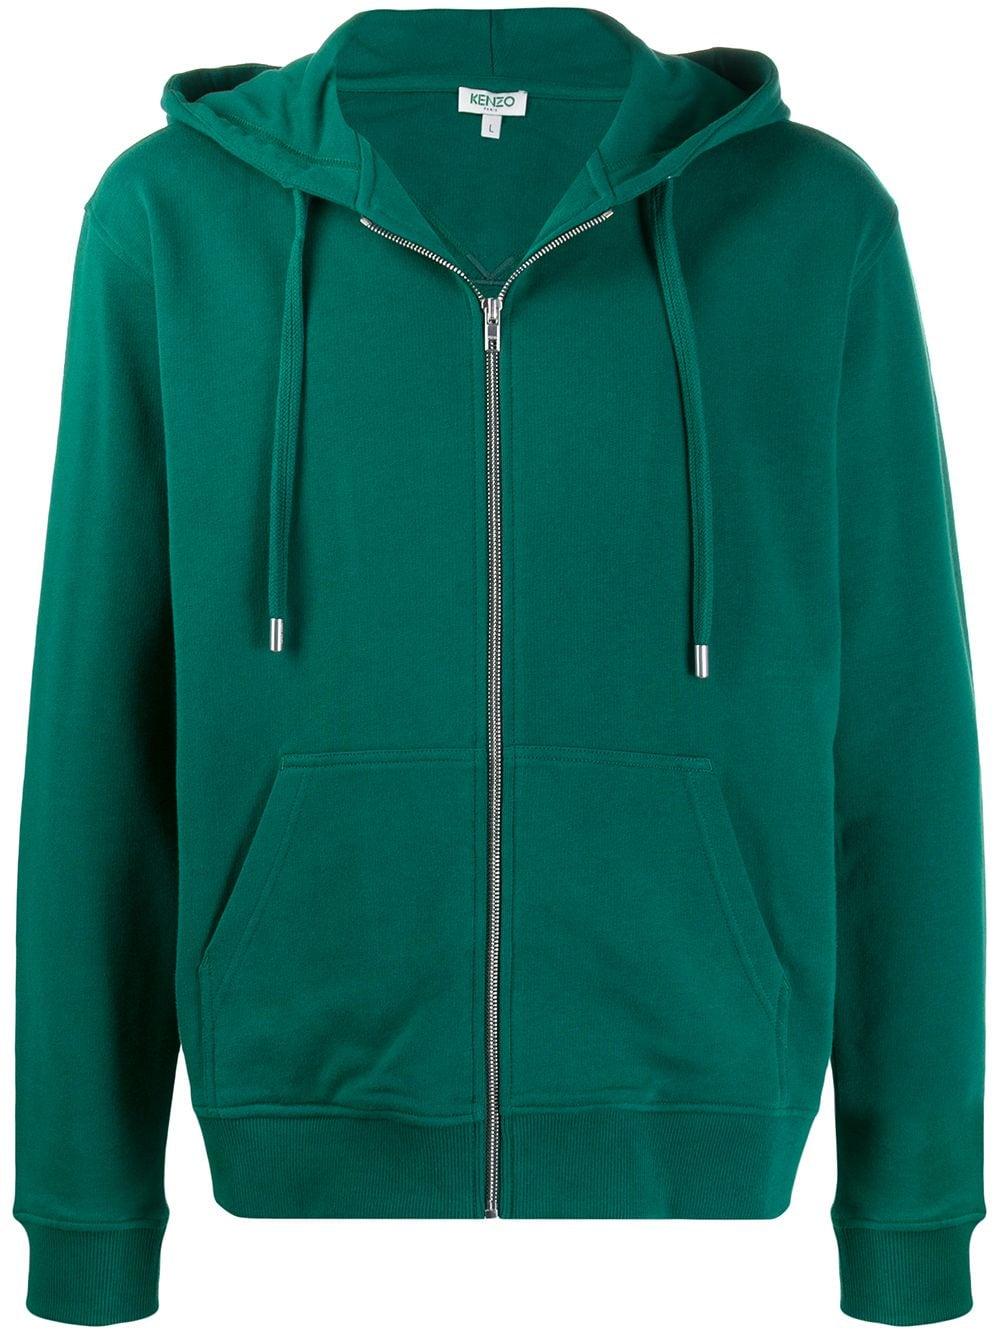 KENZO Zip-up Sweatshirt in Green for Men - Lyst